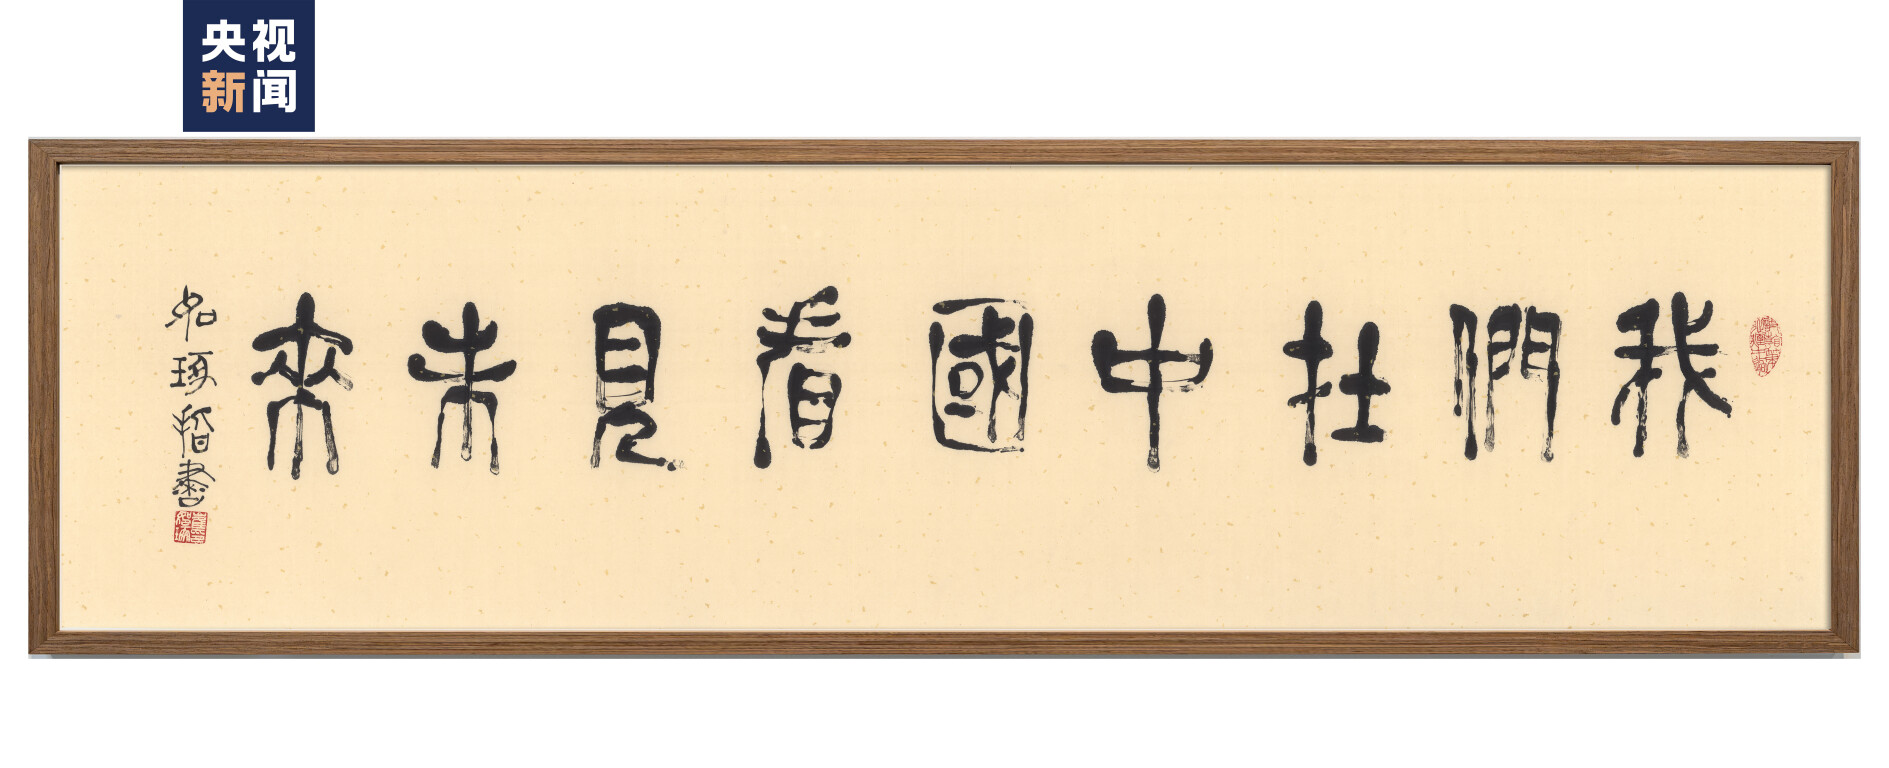 著名华人艺术家崔如琢先生为活动题字《我们在中国看见未来》